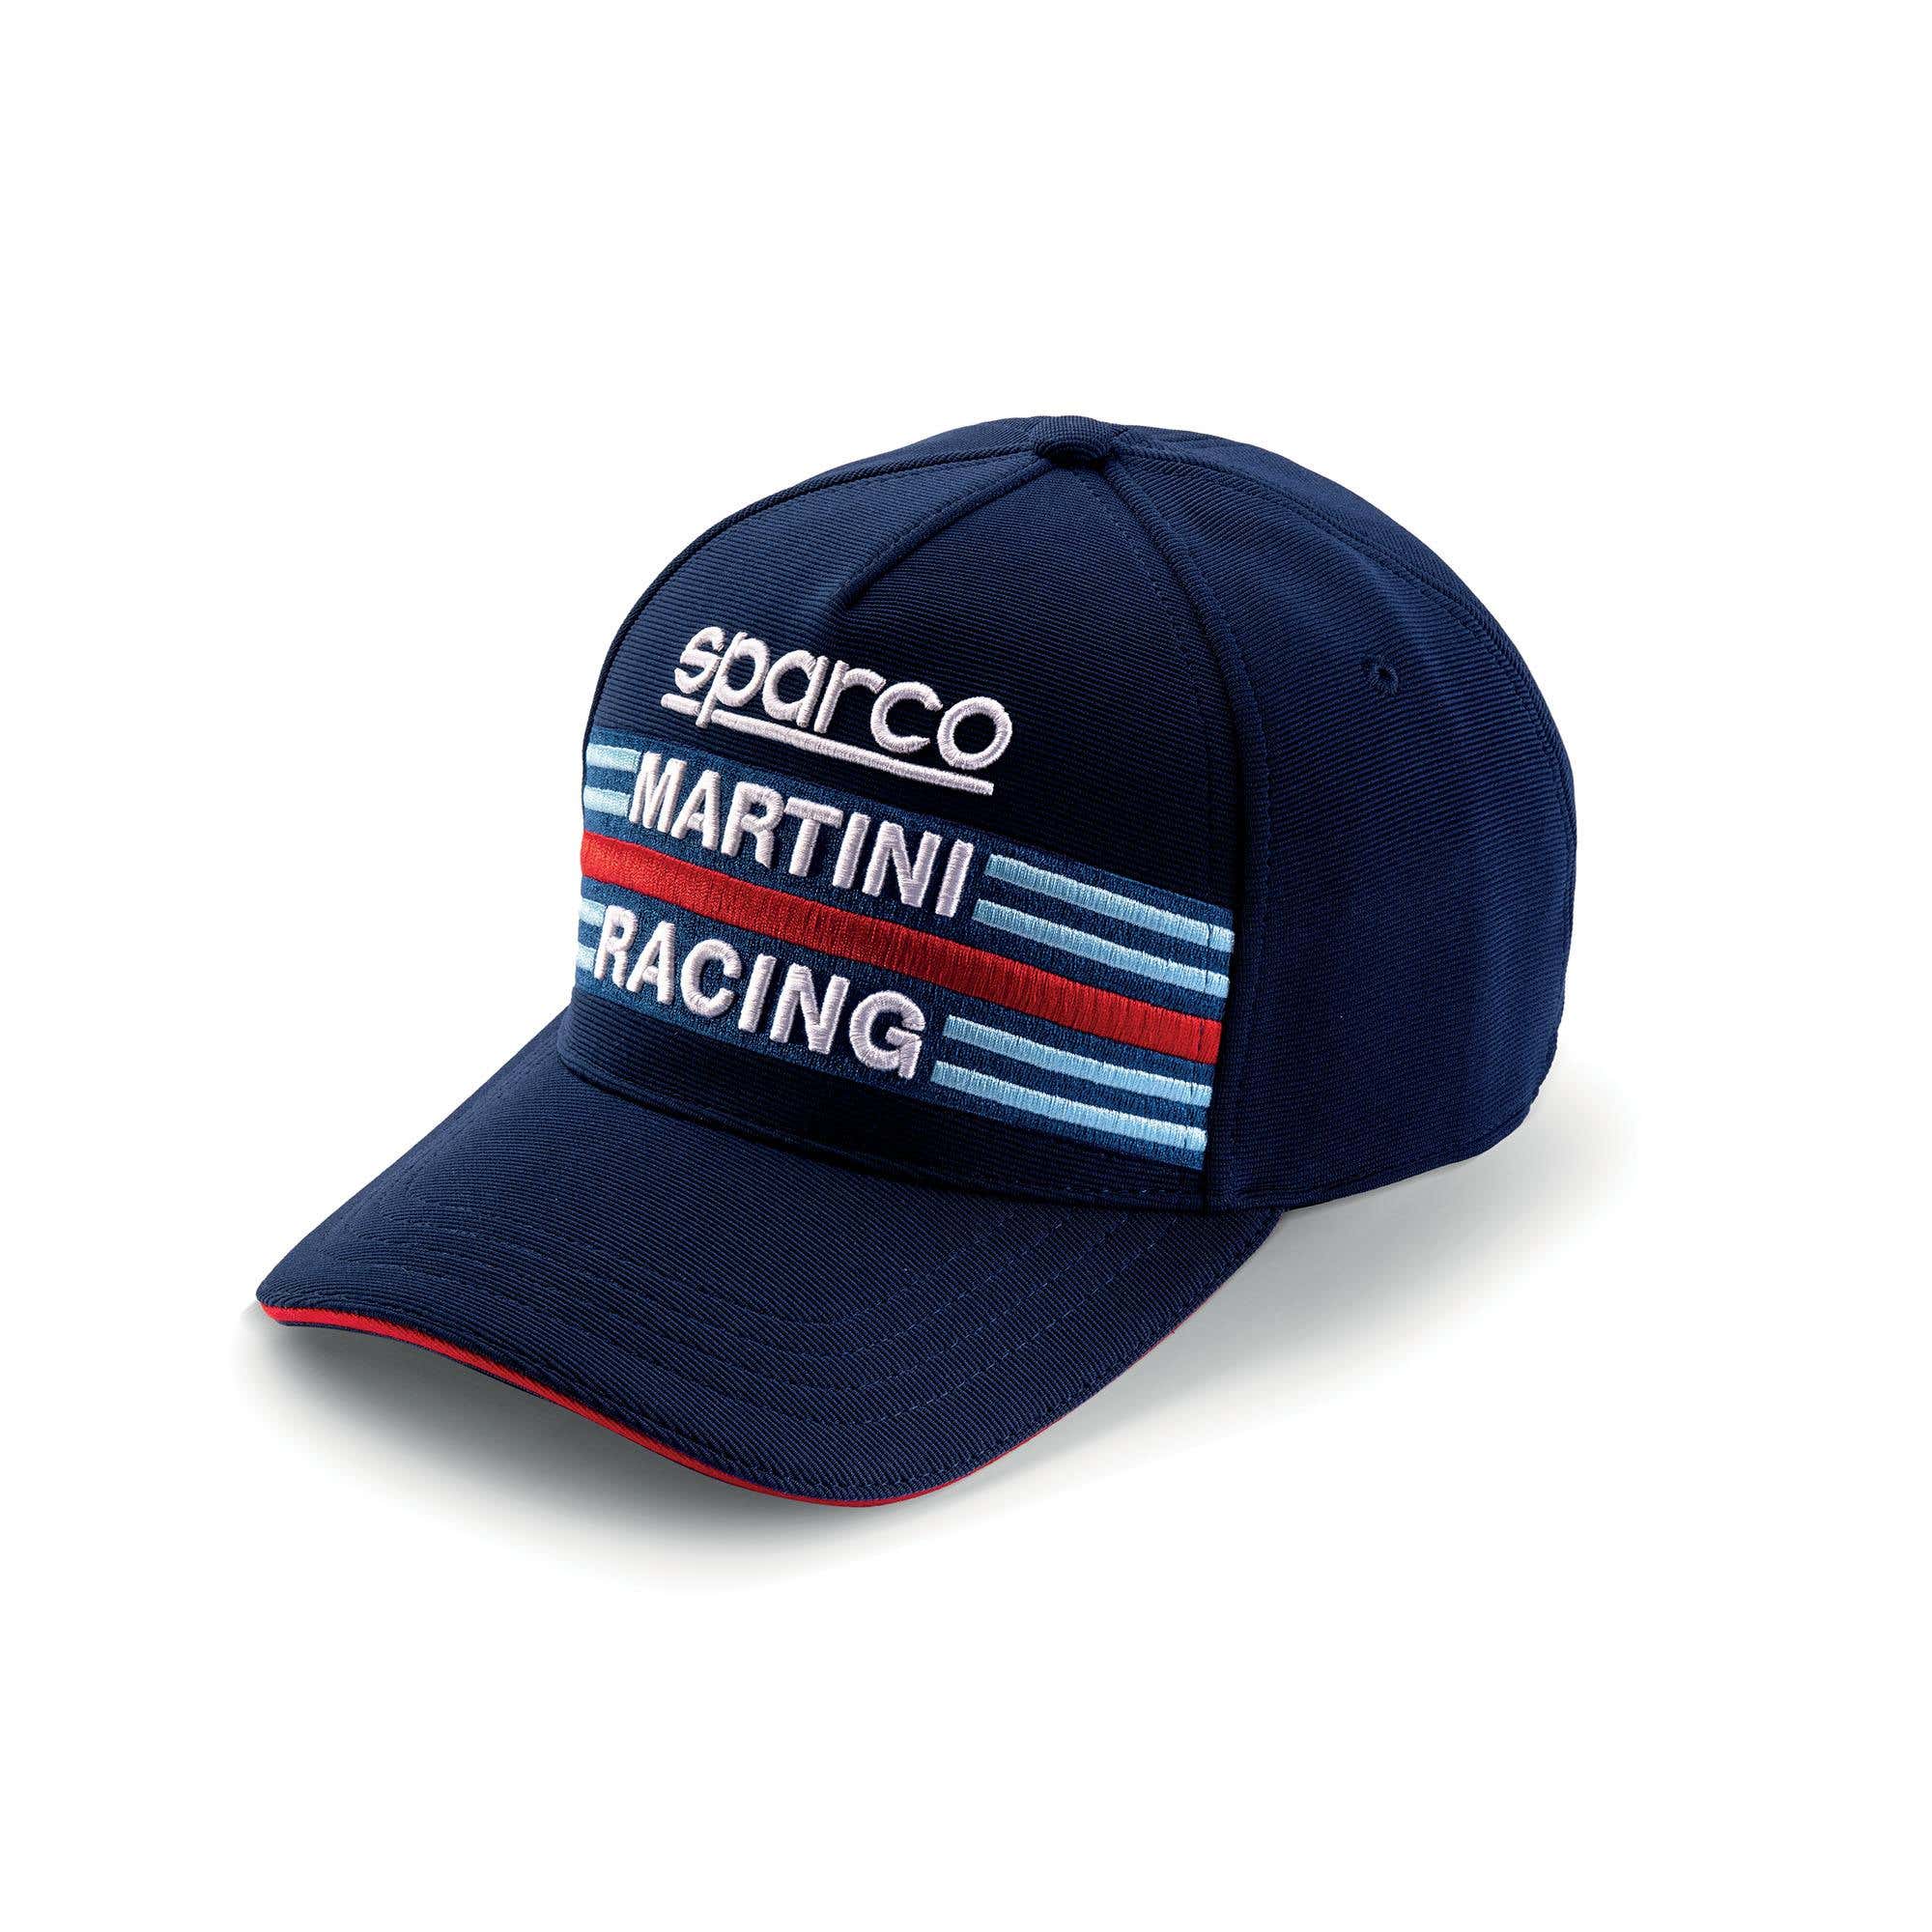 FLEX CAP MARTINI RACING - Sparco Shop